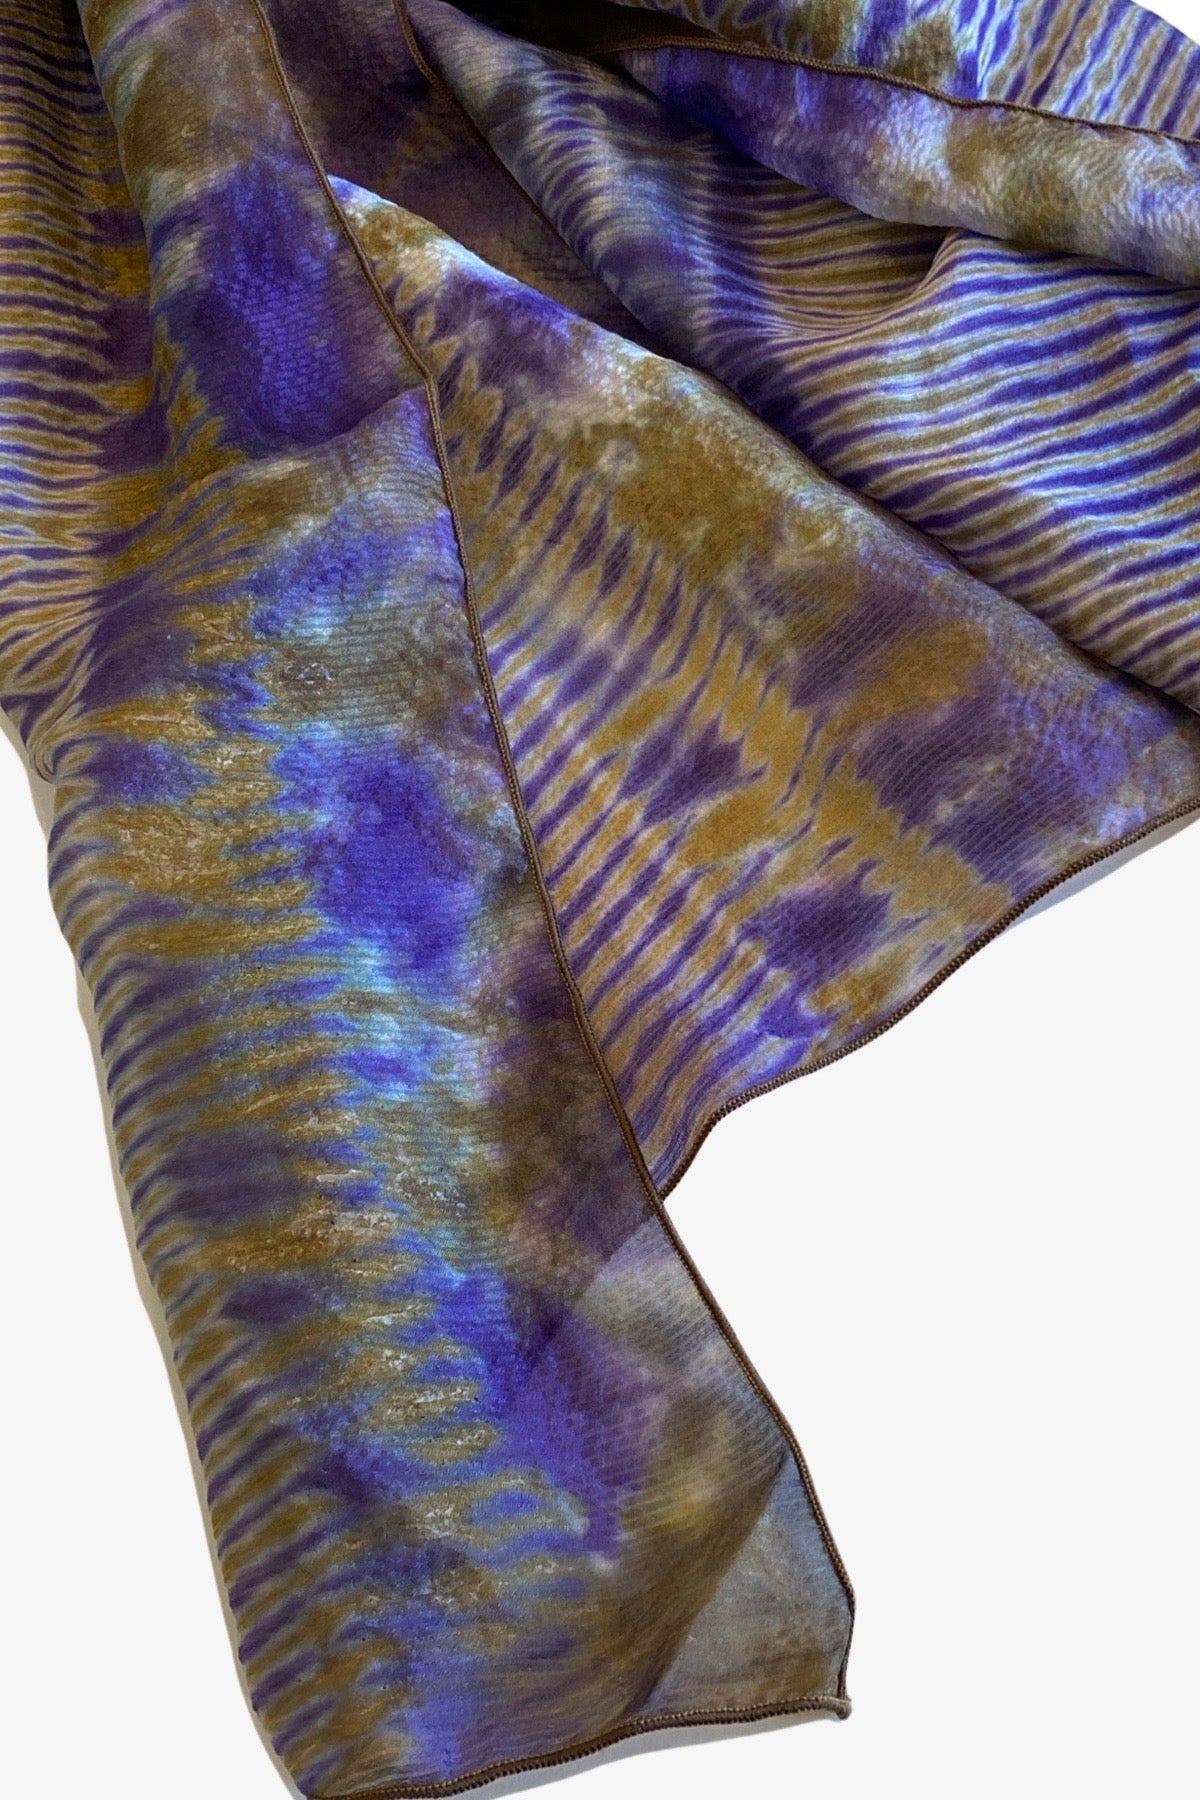 Shibori Dyed Silk Scarf in Prince